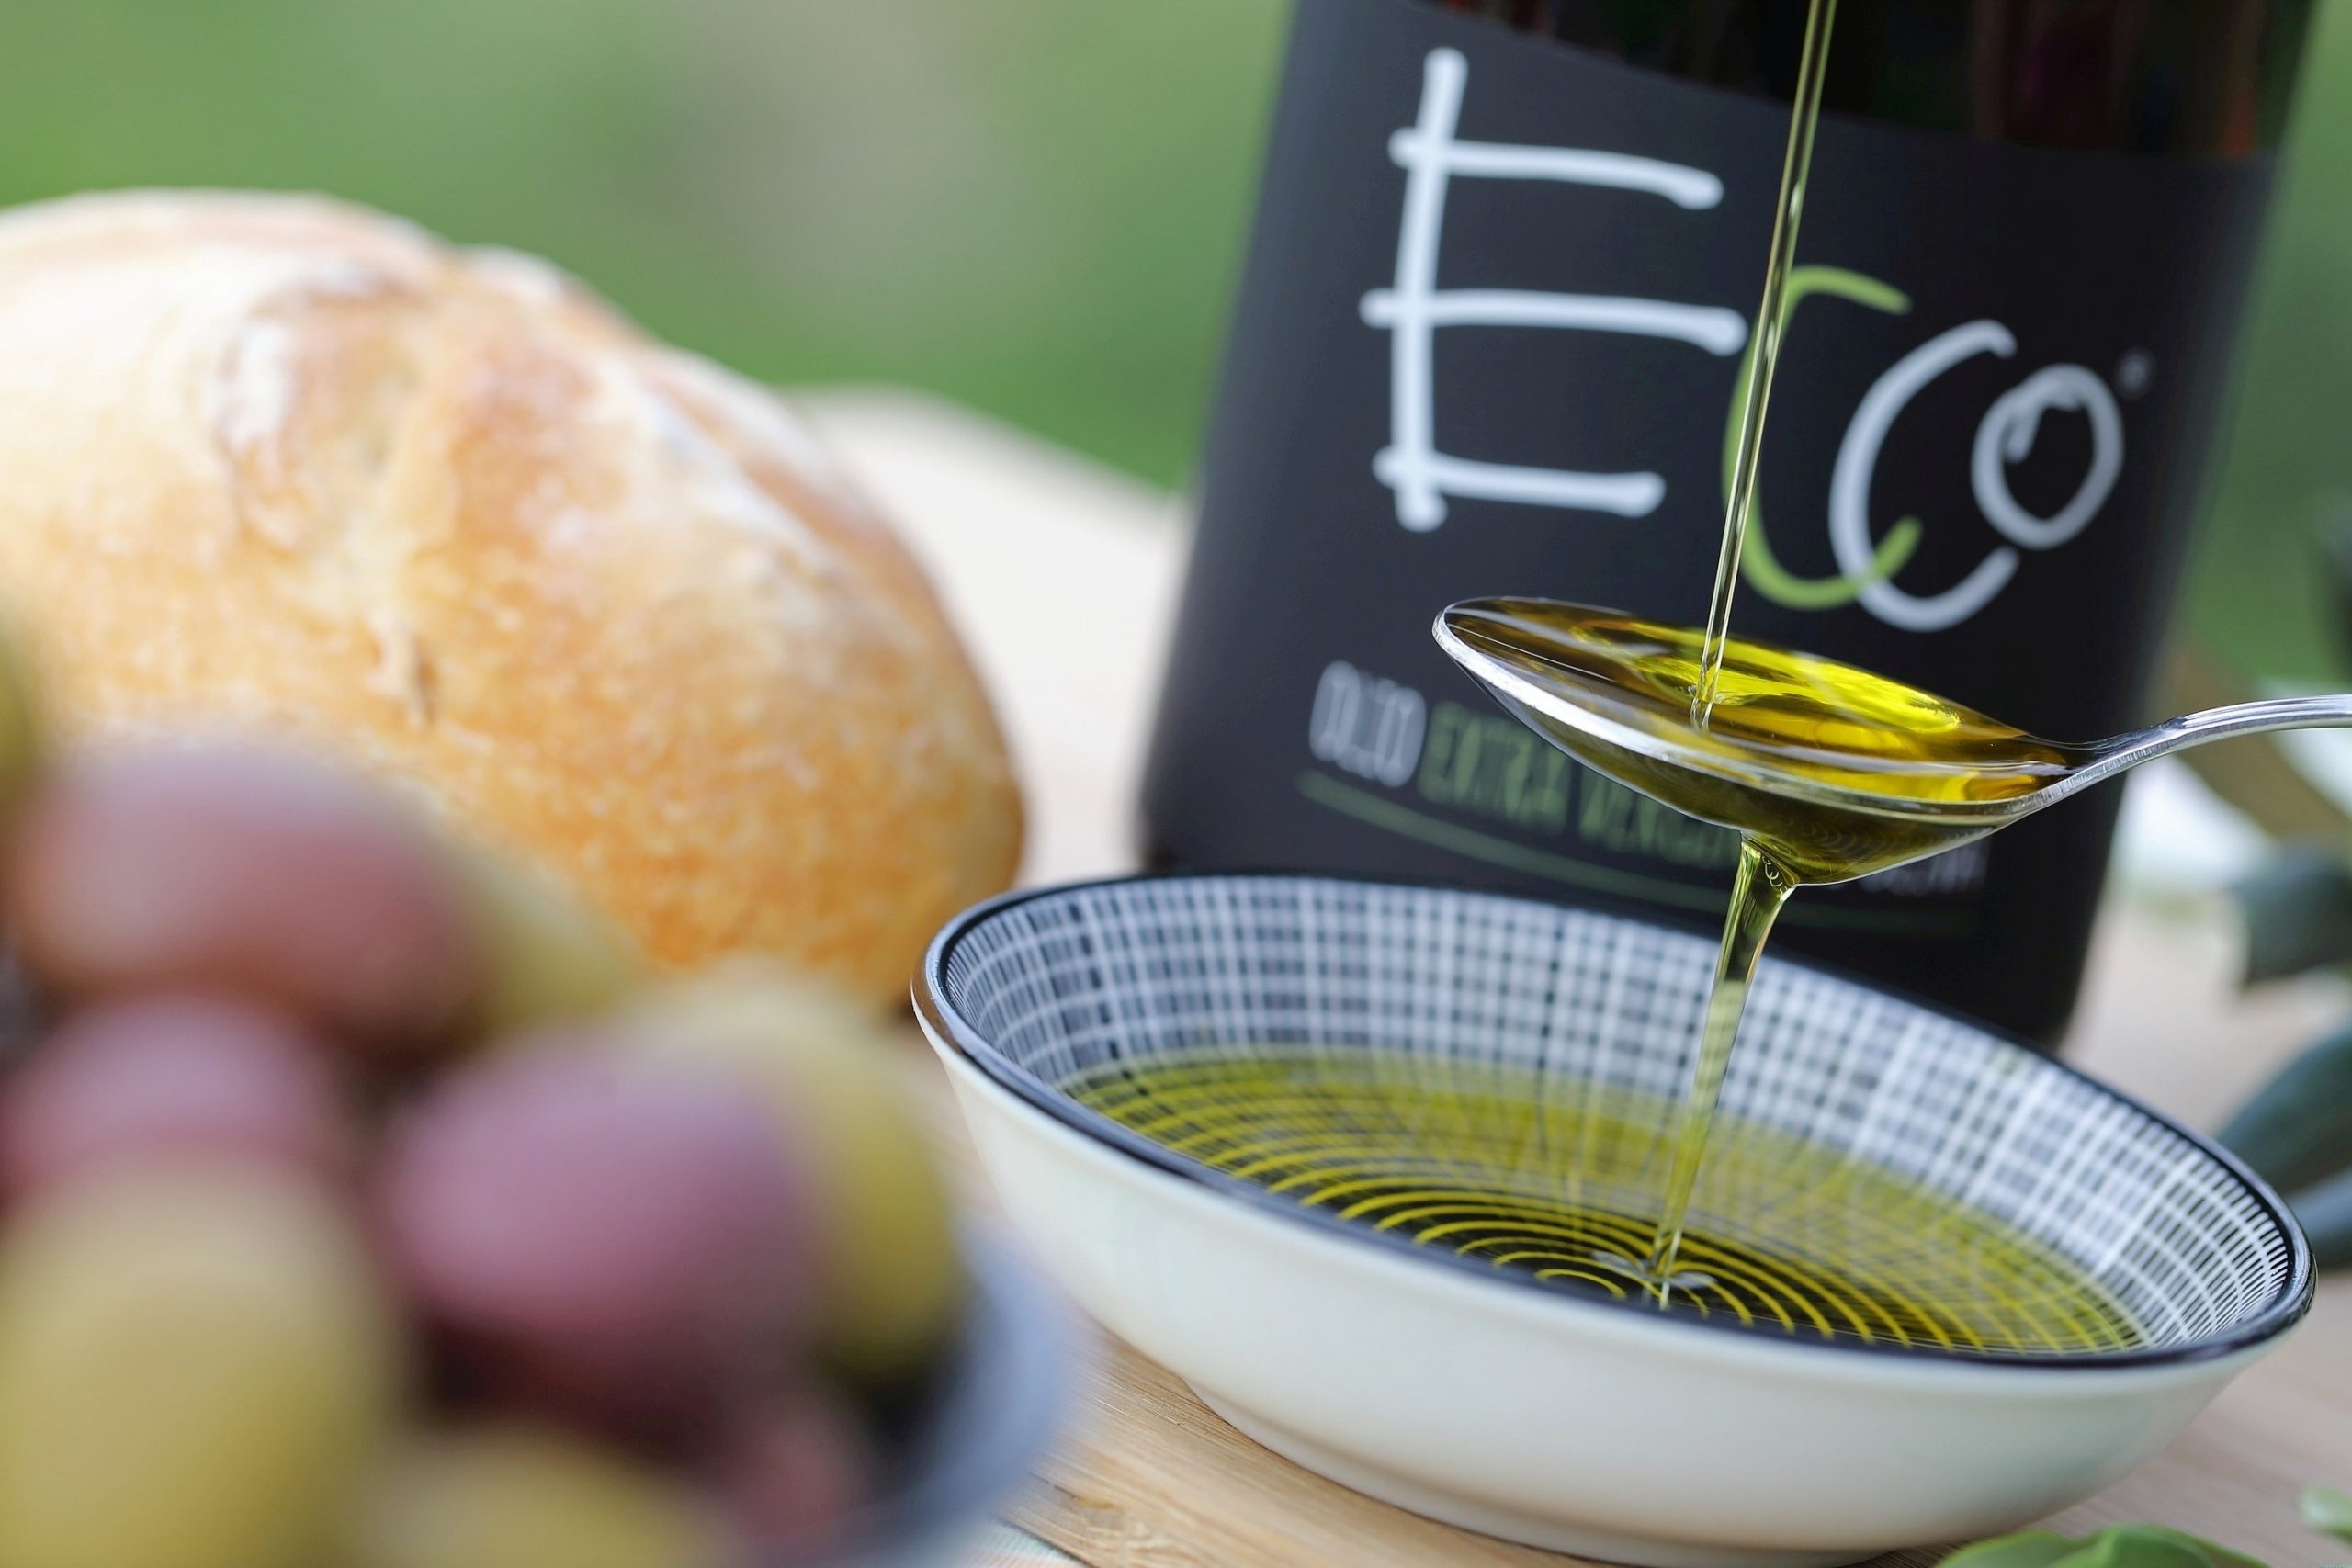 Al momento stai visualizzando “Ecco”, l’olio extravergine di oliva di Enrico Coser. Nuovo progetto del vignaiolo friulano per valorizzare le potenzialità del territorio